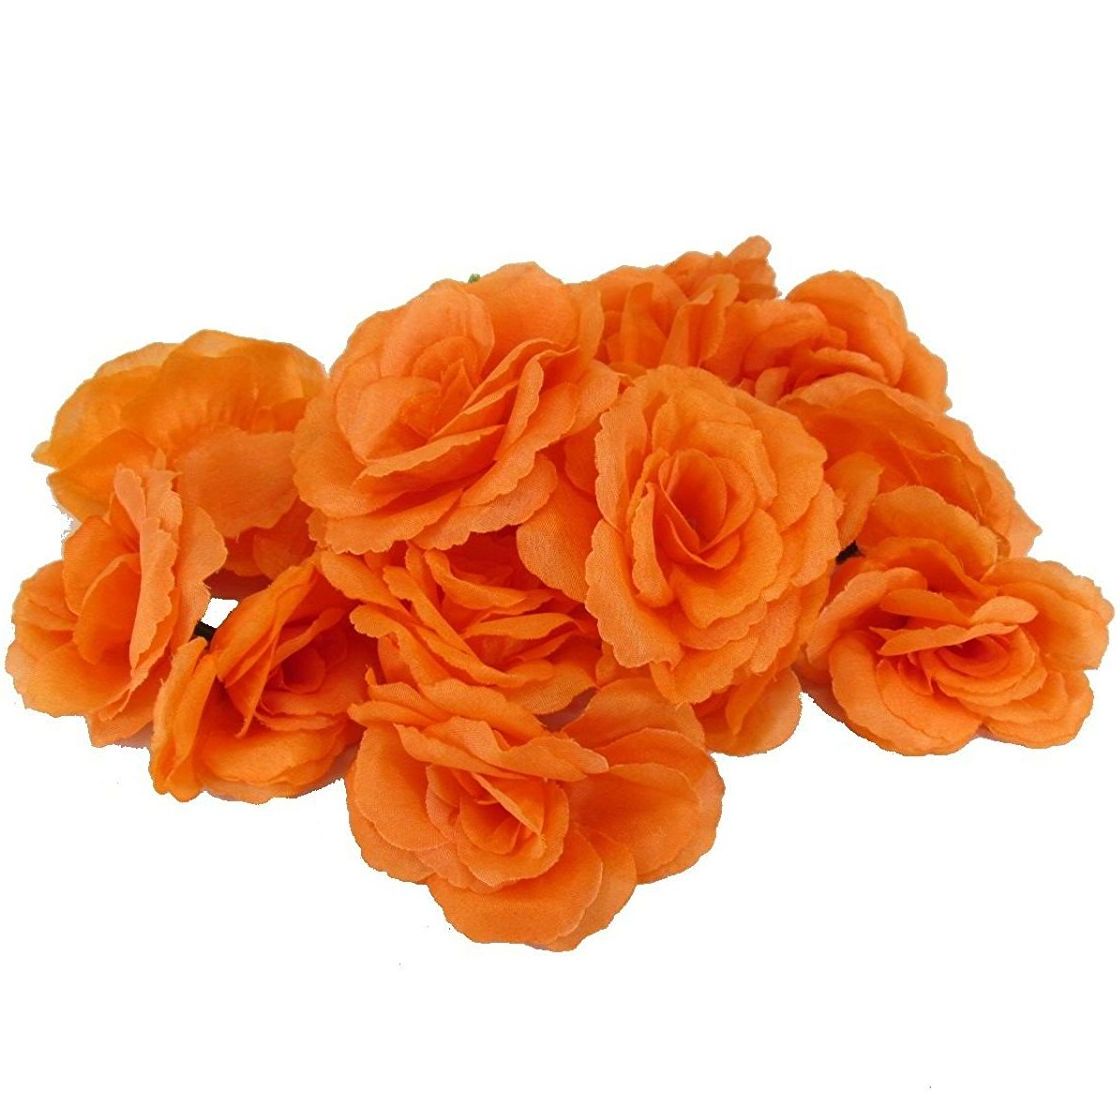 おしゃれ ローズ 若者の大愛商品 枯れない薔薇 手作り 結婚式 パーティー 暖色 造花 花のみ 専門ショップ オレンジ バラ 8センチ 50個